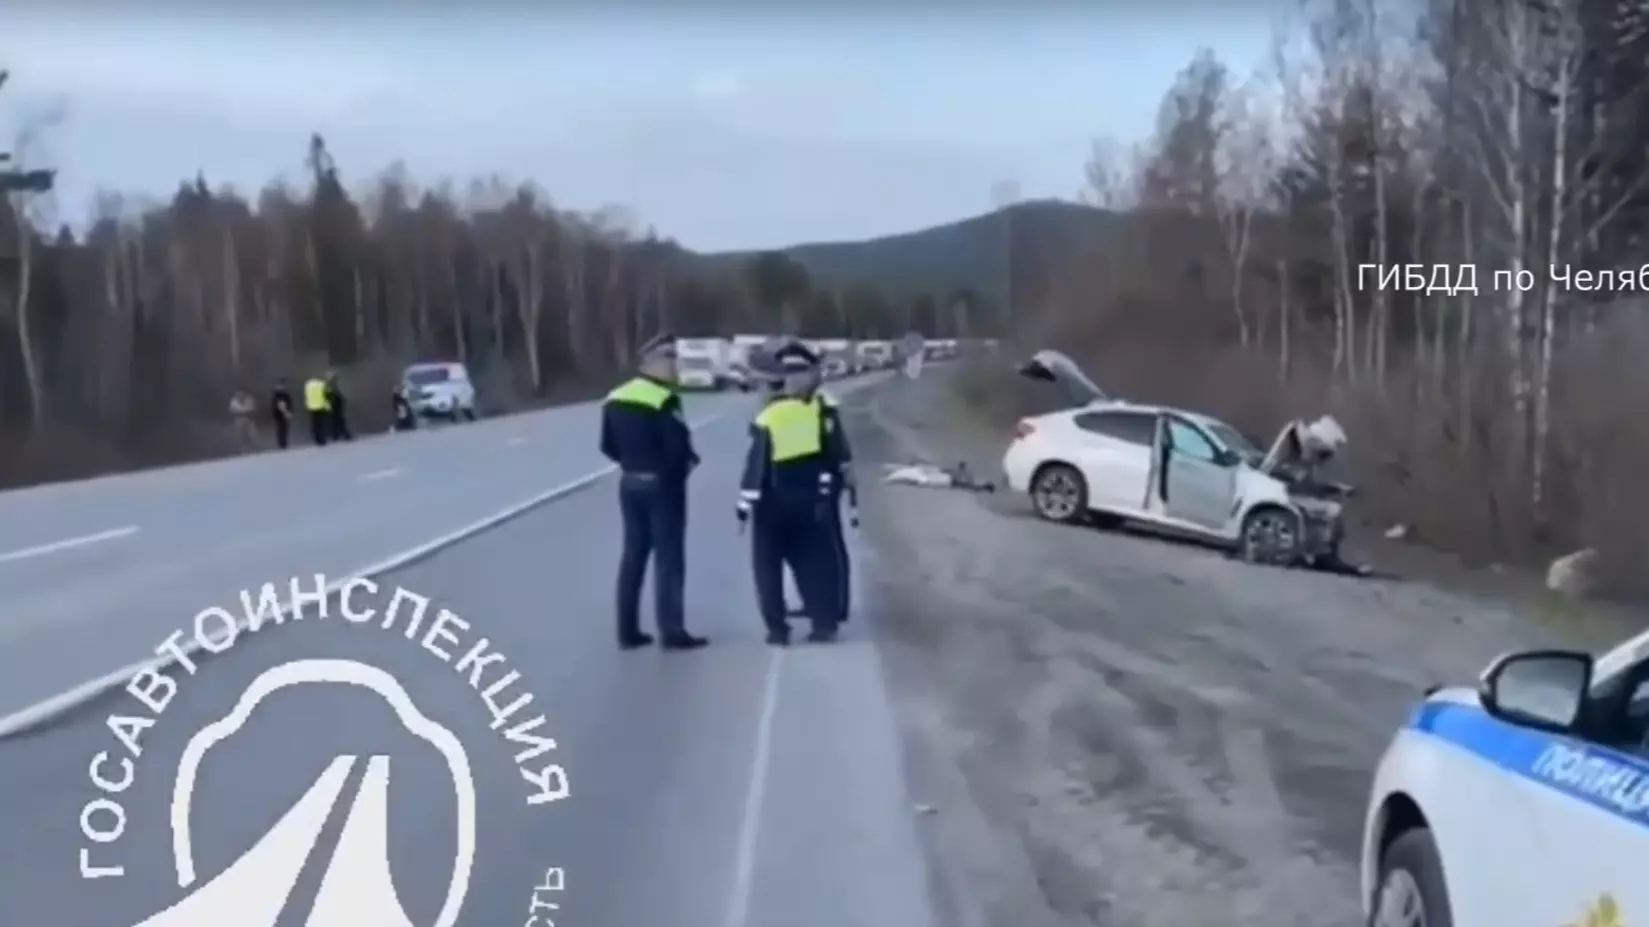 Смертельная дорожная авария на трассе М-5 в Челябинской области 18 апреля